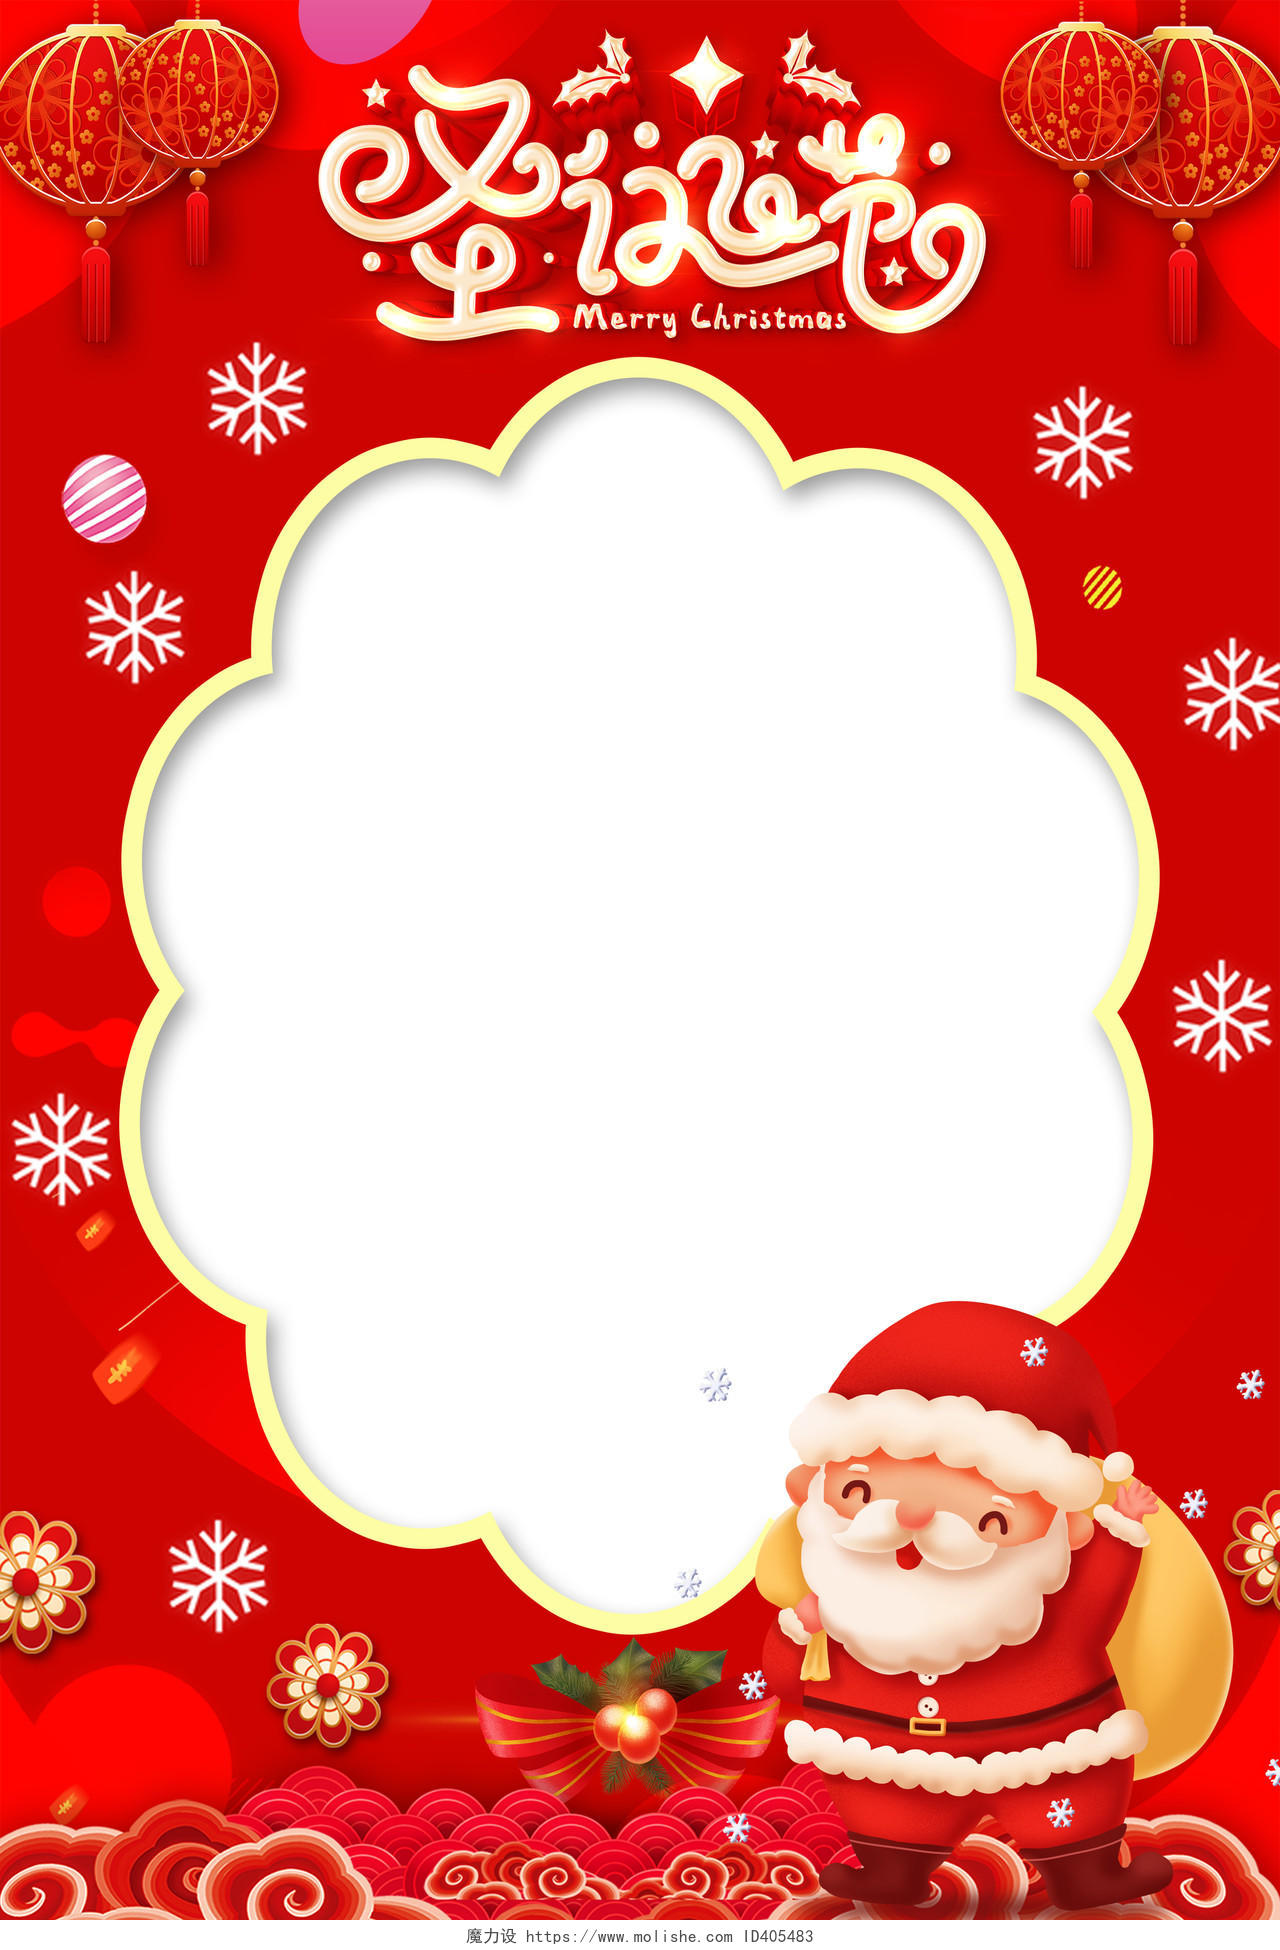 红色卡通圣诞节拍照框kt板海报设计圣诞节圣诞拍照框